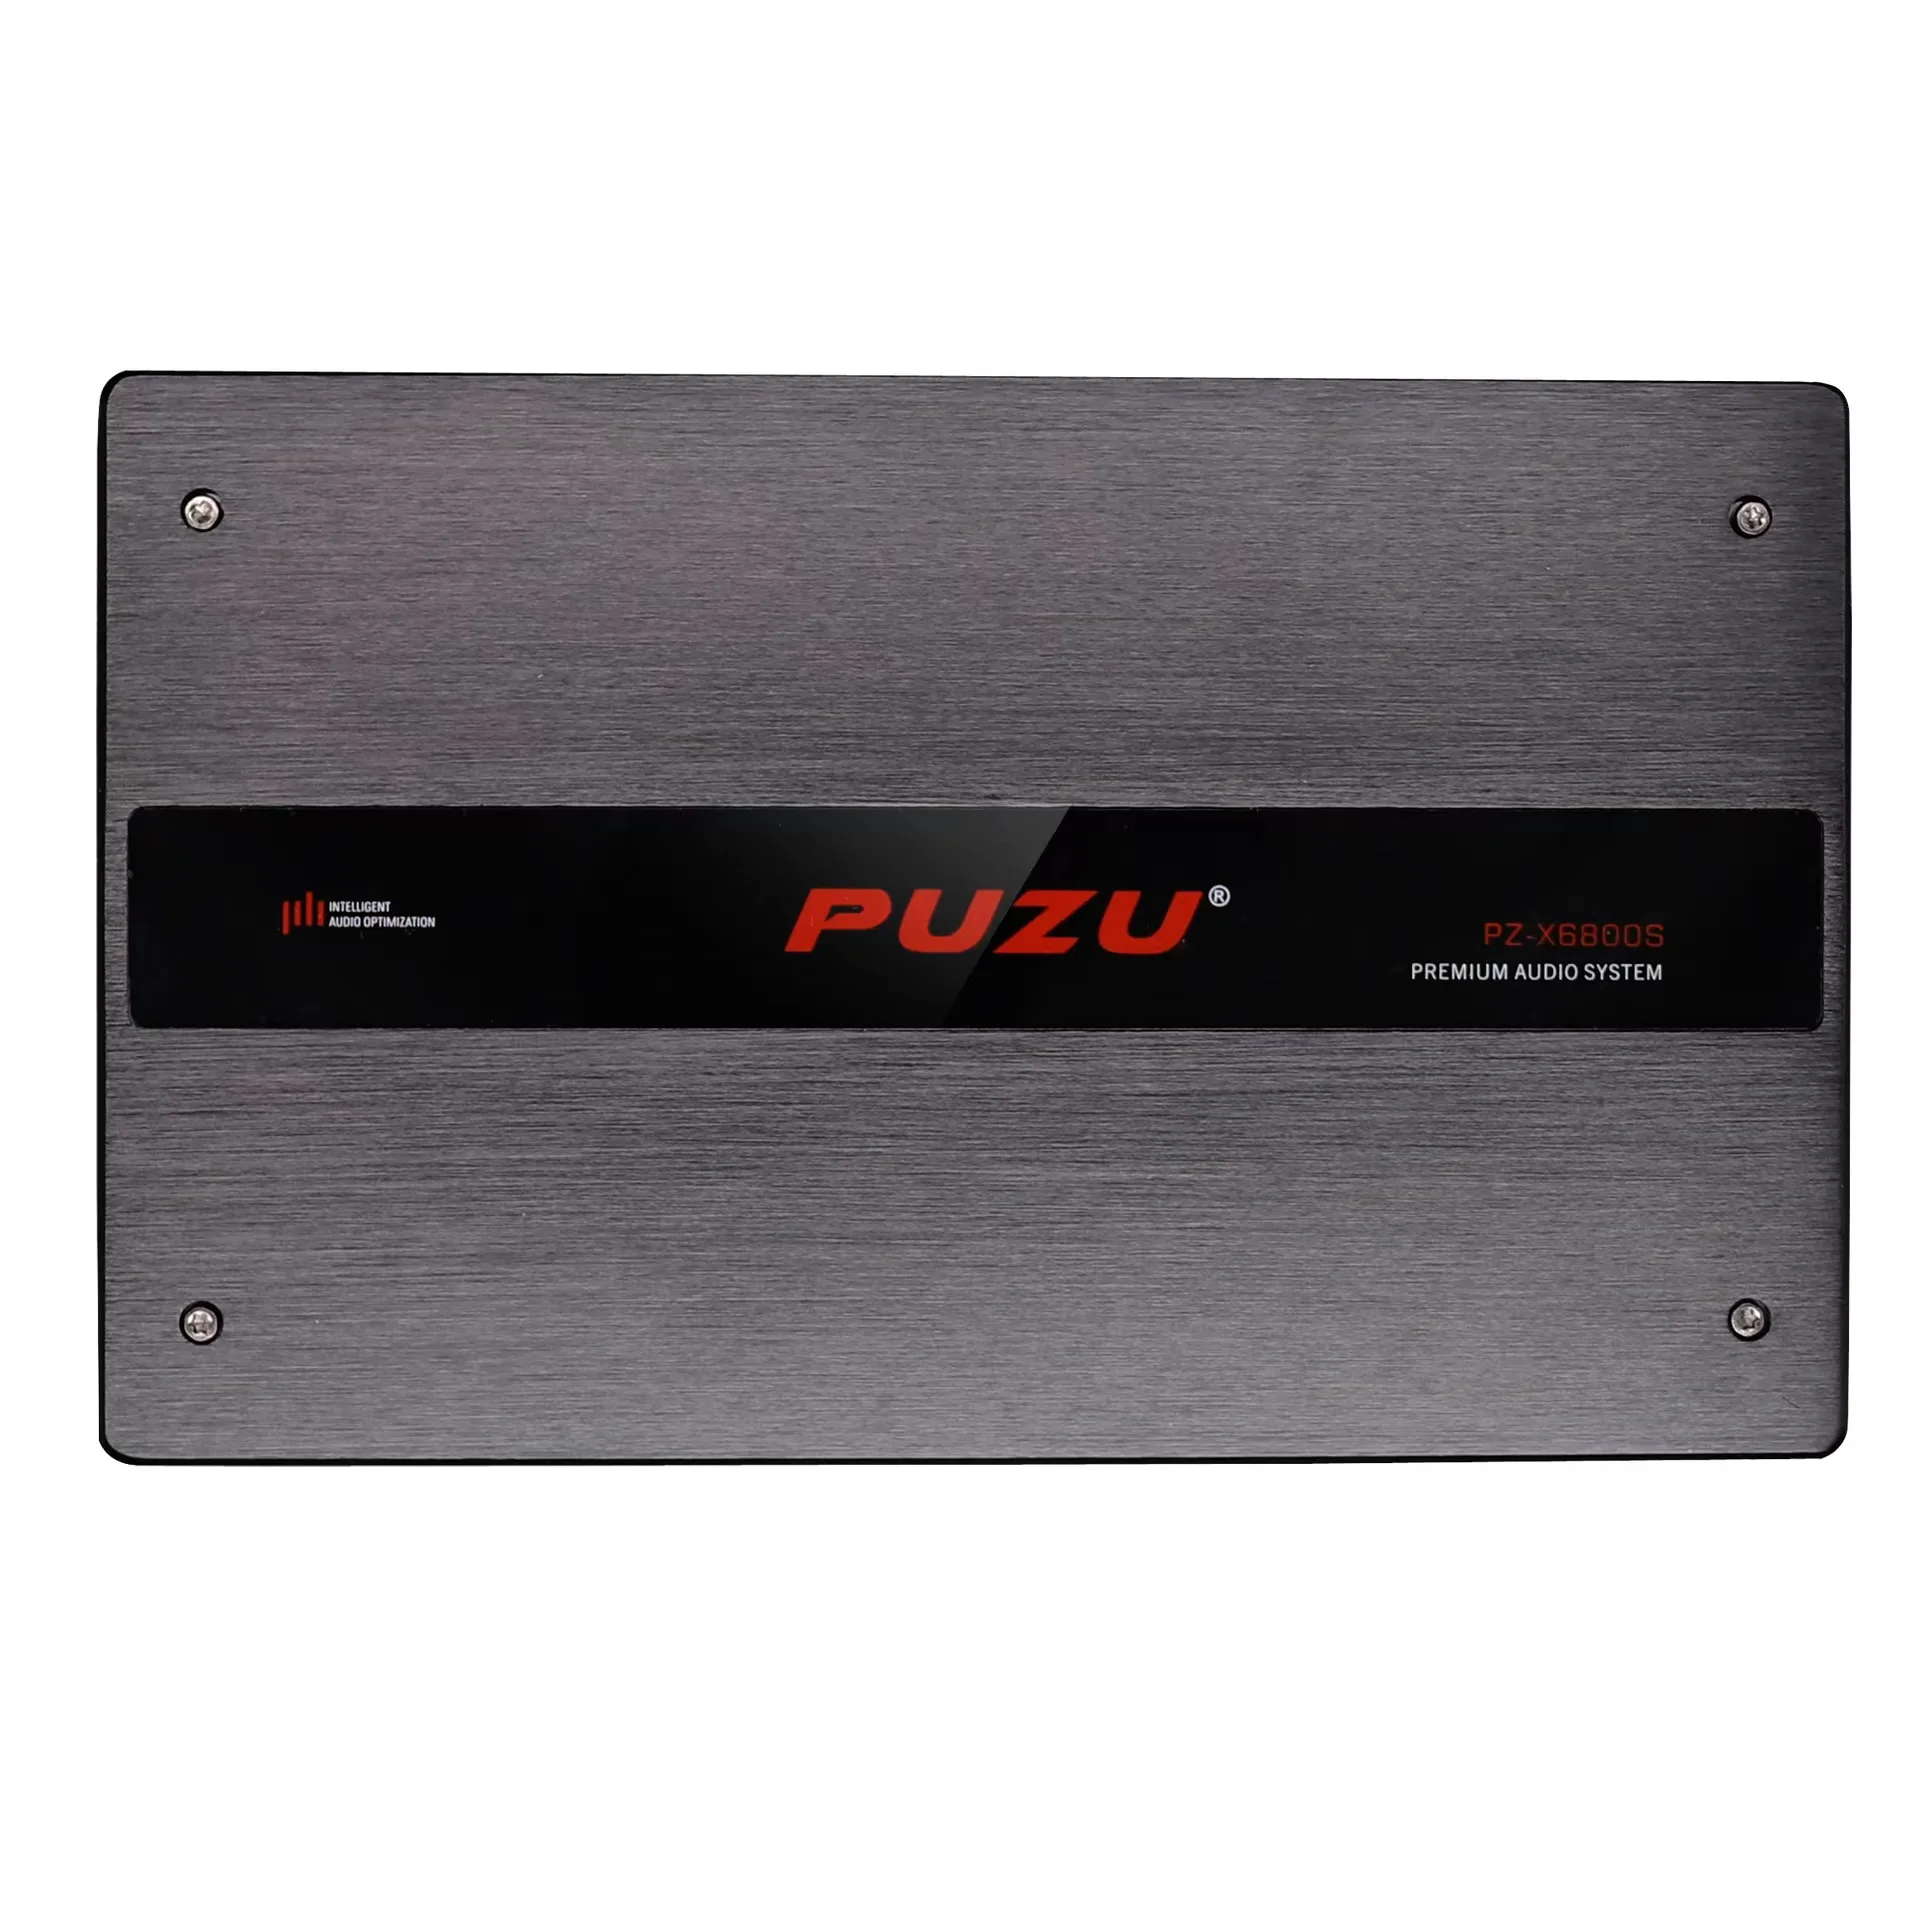 Модификация аудиосистемы автомобиля PUZU PZ-X6800S 6-дюймовый усилитель мощности DSP с 10 выходами, выделенный для автомобиля процессор Изображение 1